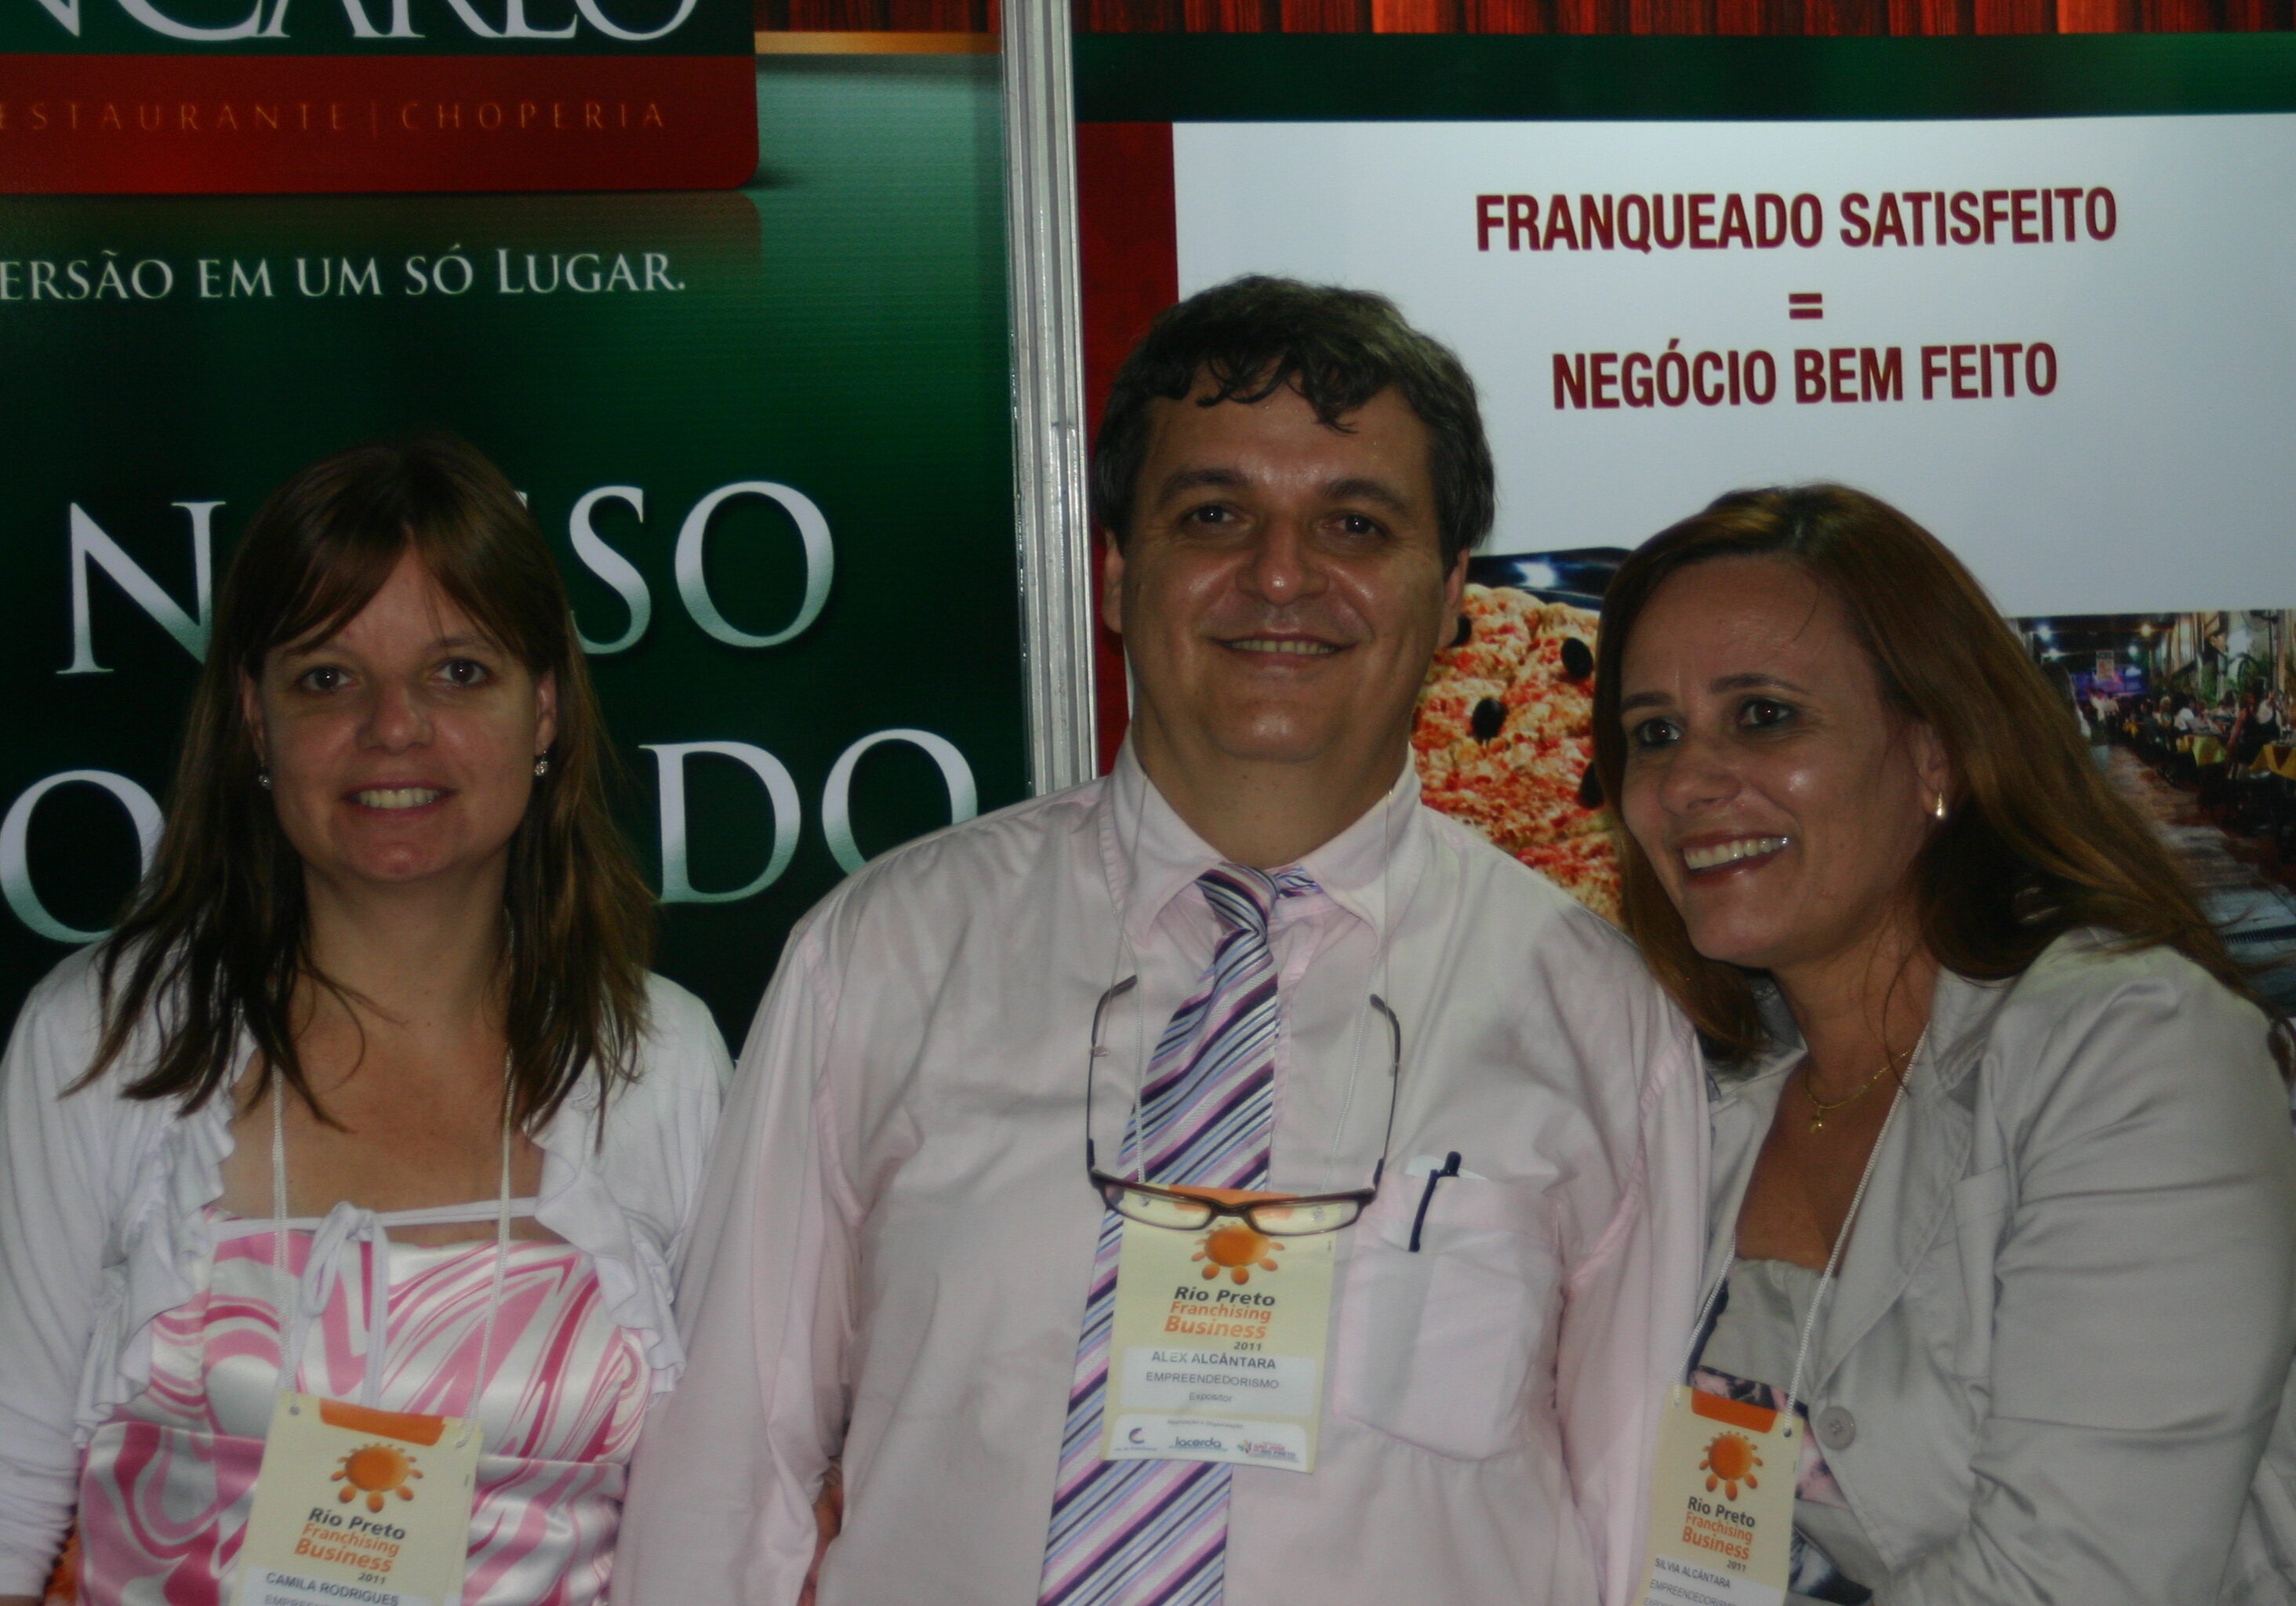 Don Carlo na Rio Preto Franchising